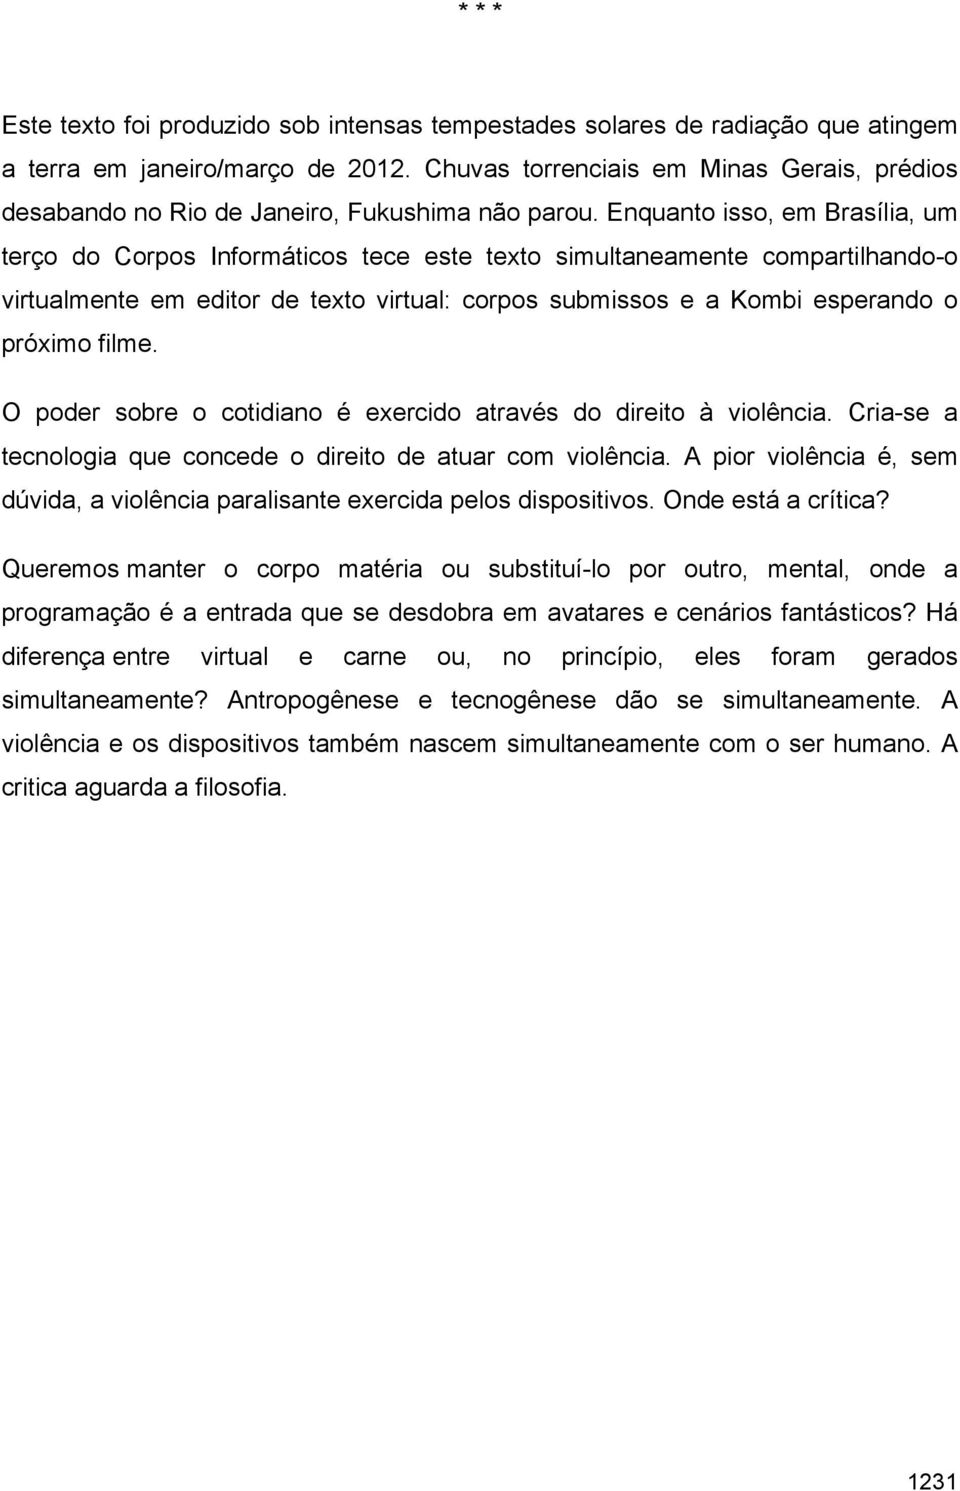 Enquanto isso, em Brasília, um terço do Corpos Informáticos tece este texto simultaneamente compartilhando-o virtualmente em editor de texto virtual: corpos submissos e a Kombi esperando o próximo